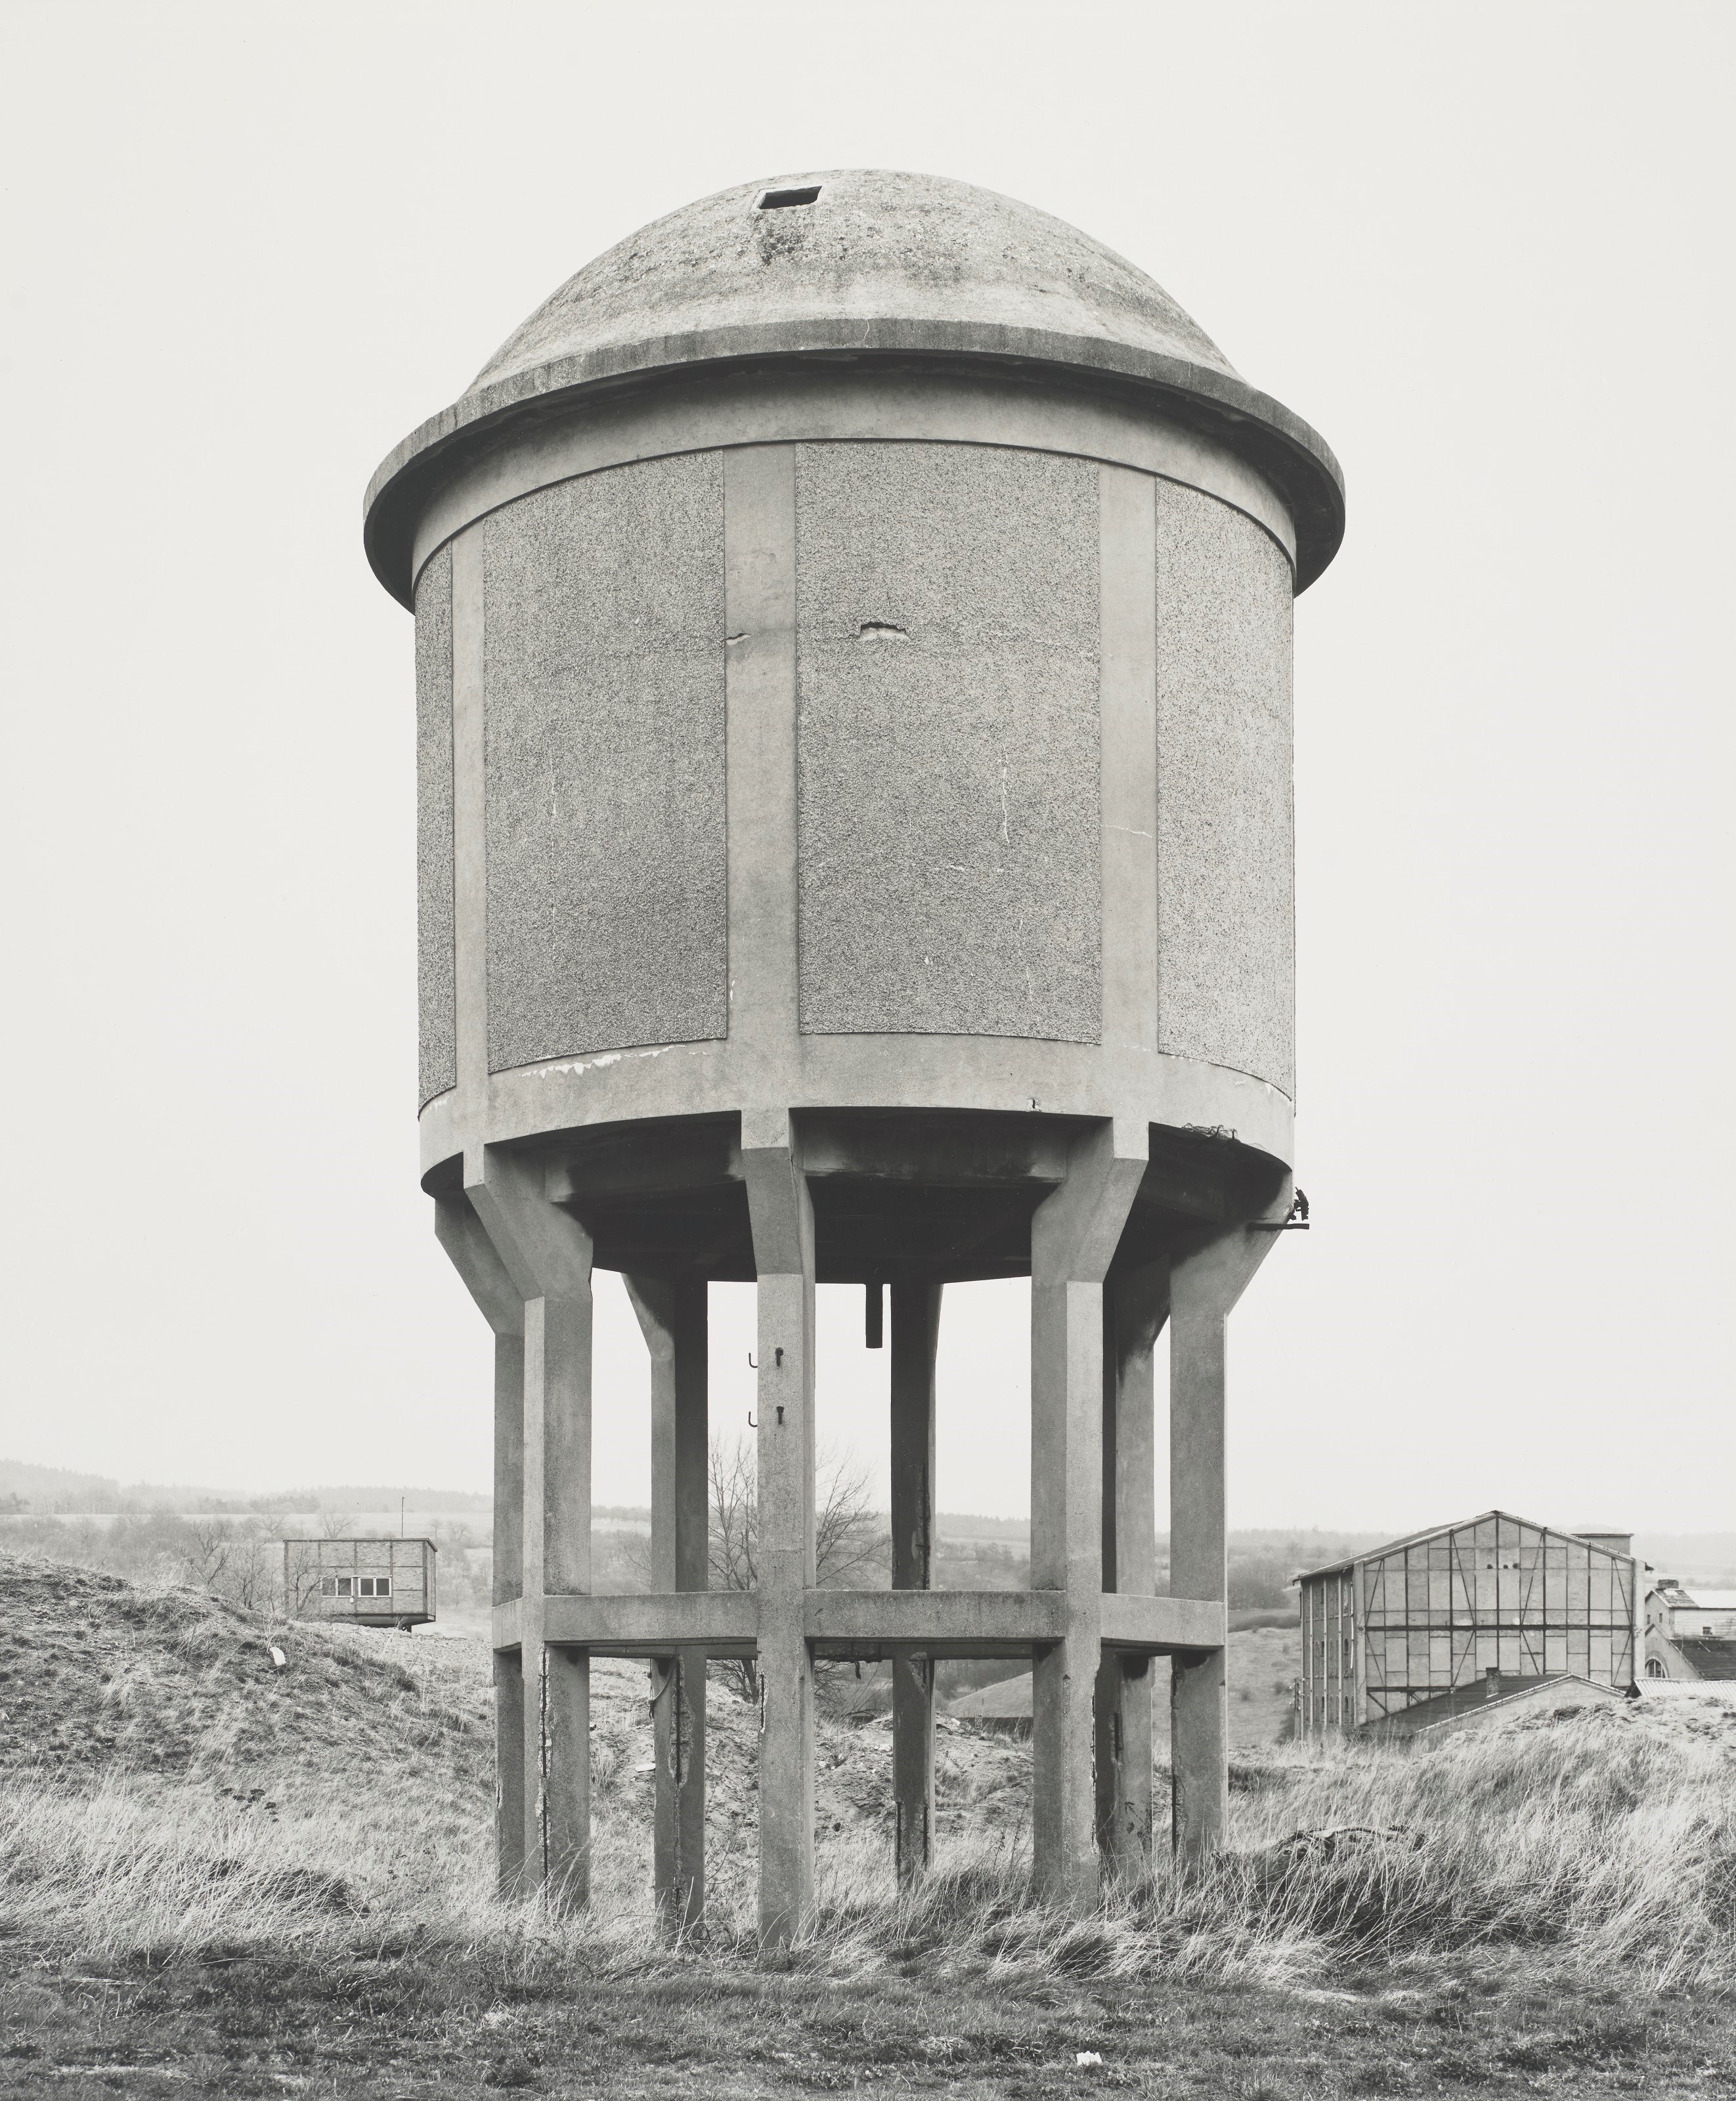 Water Tower, "Berka/Wipper, Thuringen," by Bernd & Hilla Becher, 1996